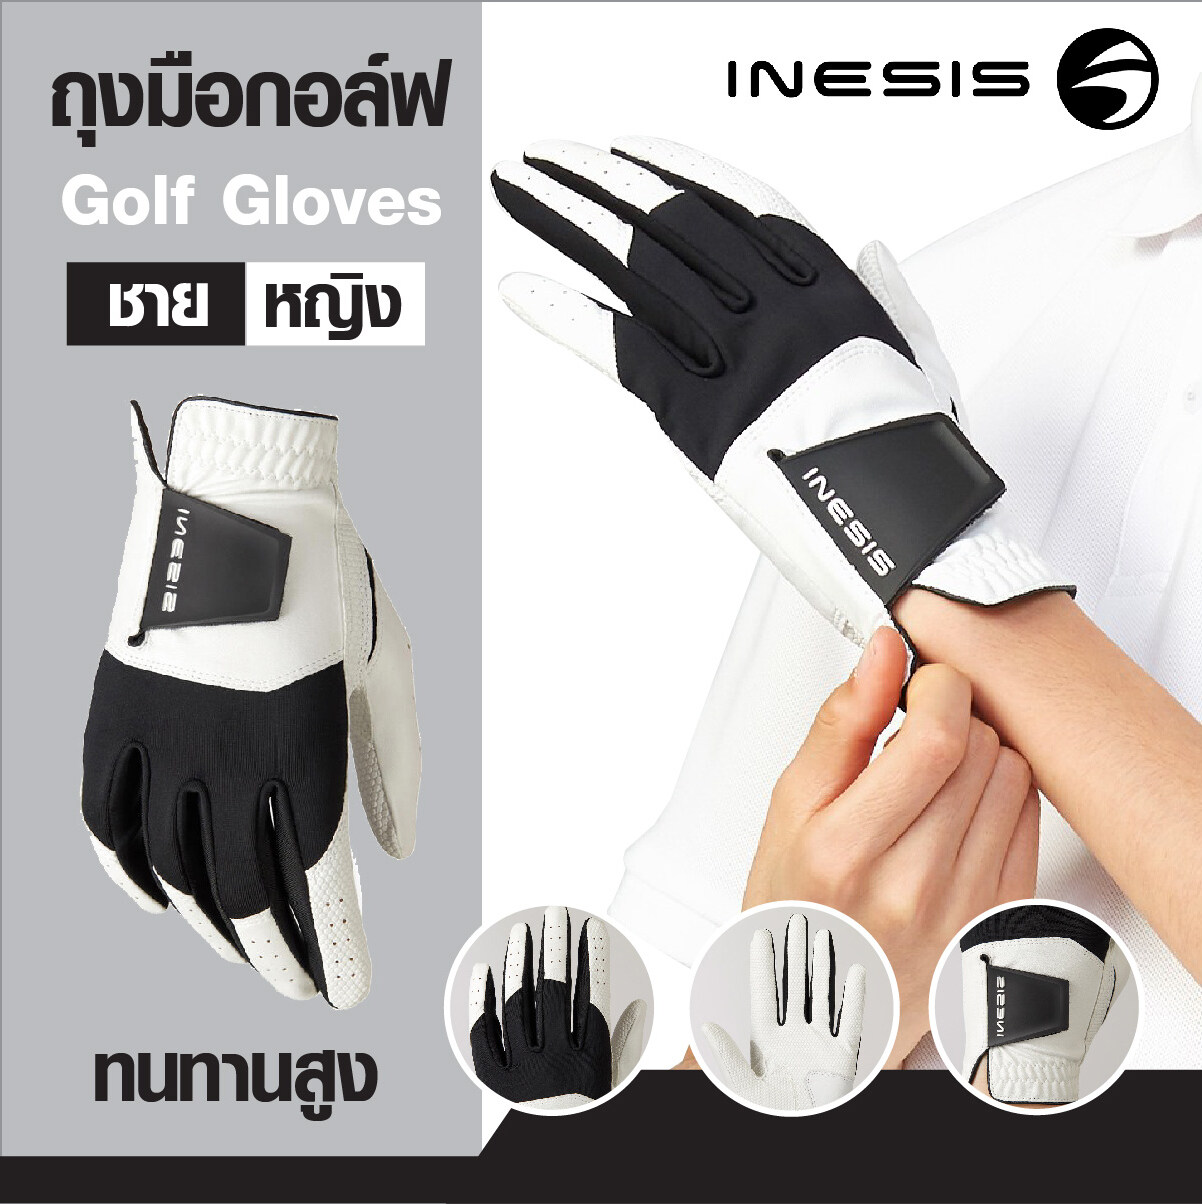 ถุงมือกอล์ฟ Golf Gloves INESIS เนื้อผ้ายืดหยุ่น ทนทานสูง กระชับมือ มีหลาย Size ให้เลือก ผู้ชาย / ผู้หญิง ถนัดขวา right Hand / ถนัดซ้าย Left Hand ราคาพิเศษ !!